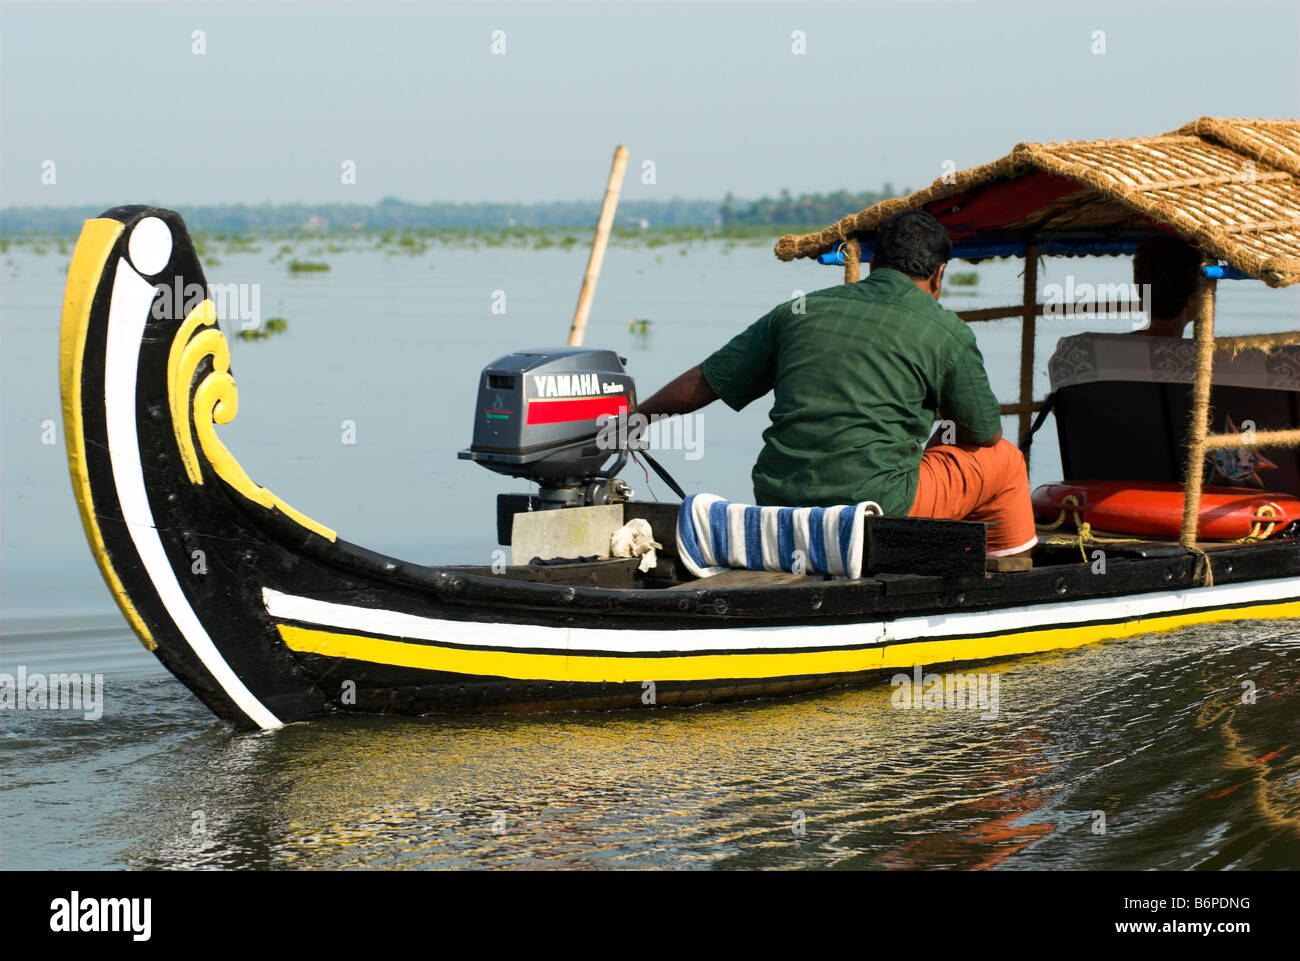 Außenbordmotor angetrieben traditionelles Boot, die Beförderung von Passagieren auf den Backwaters von Kerala Vembanad See Indien Stockfoto